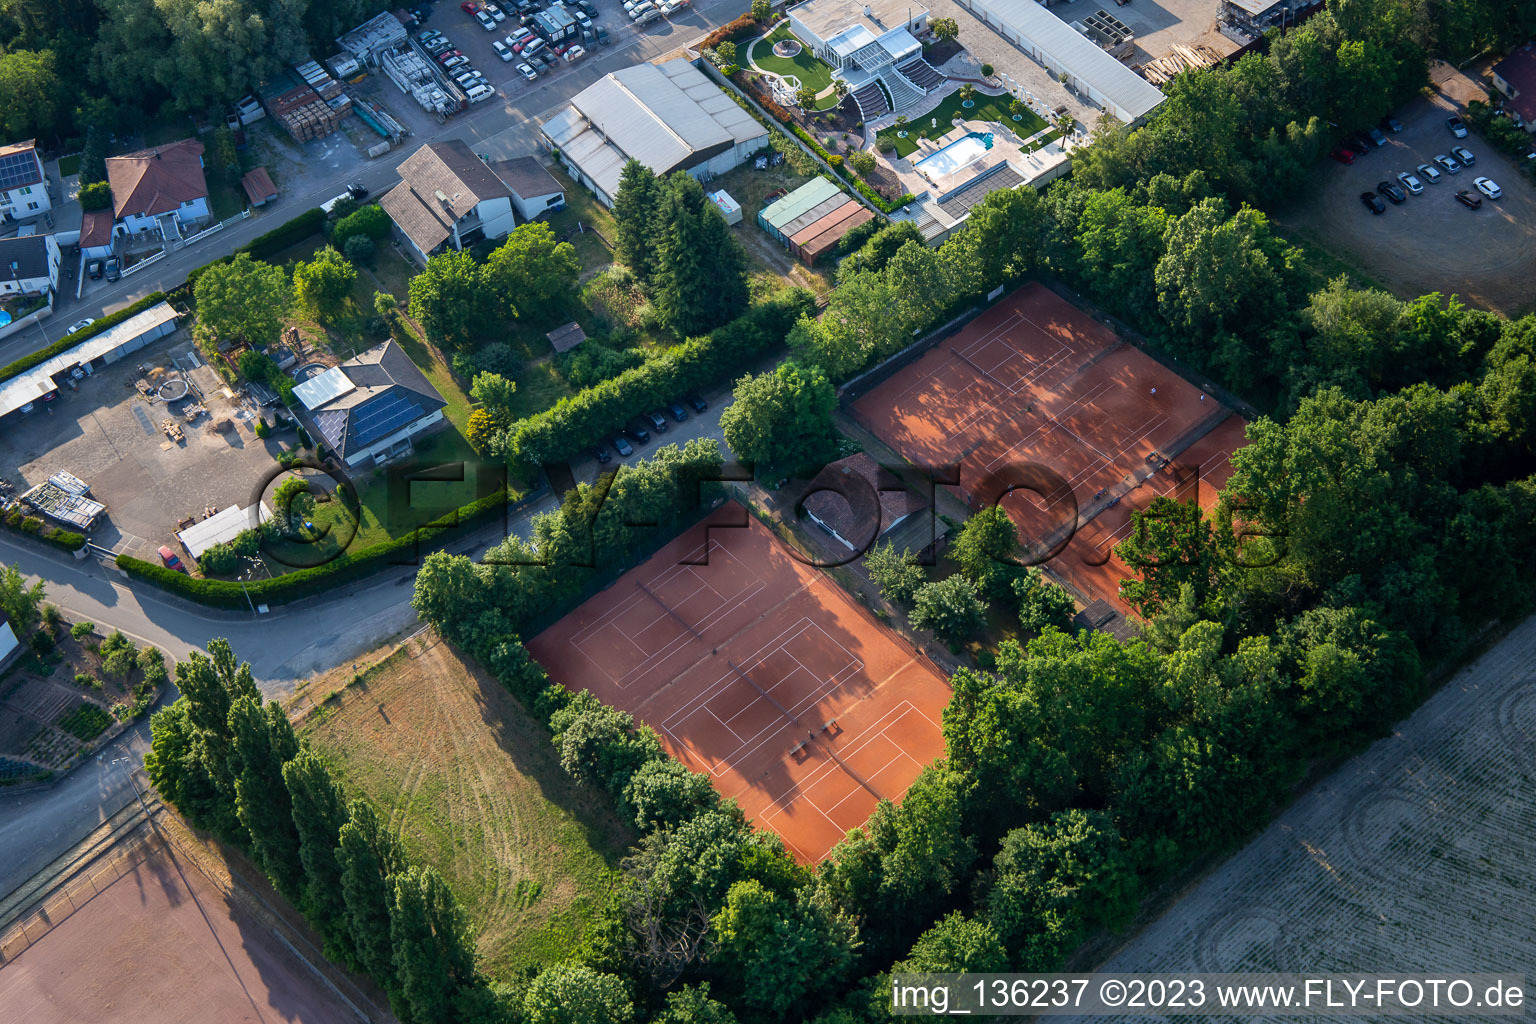 Vue aérienne de Communauté du tennis 1980 Hördt e. v à Hördt dans le département Rhénanie-Palatinat, Allemagne